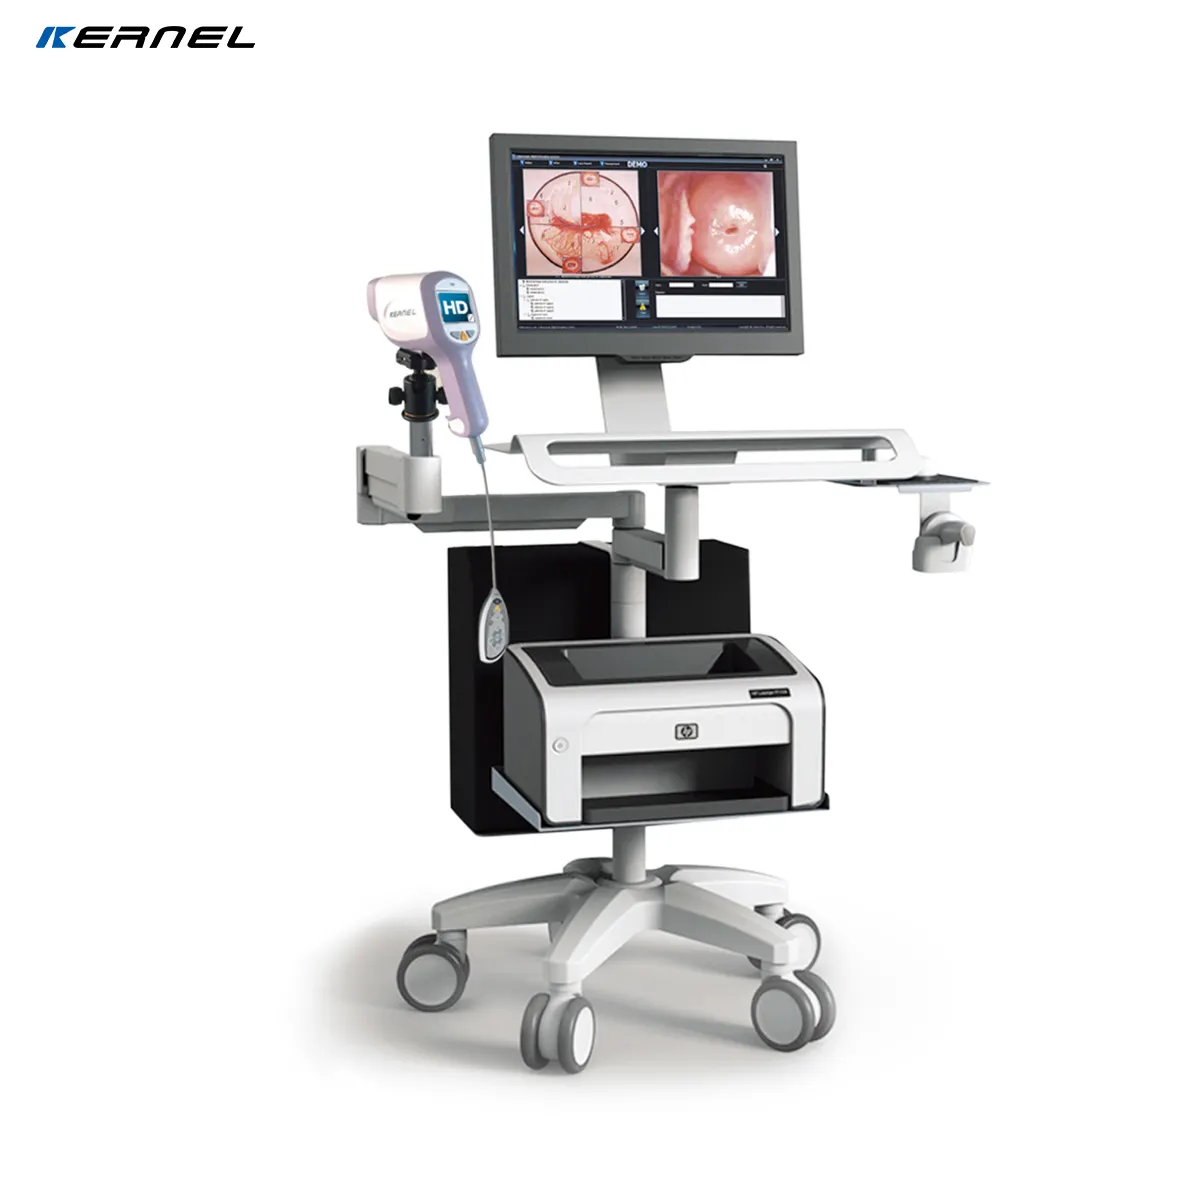 Colposcopio electrónico de alta calidad para prevenir enfermedades ginecológicas, colposcopio electrónico para clínicas ginecológicas de hospitales